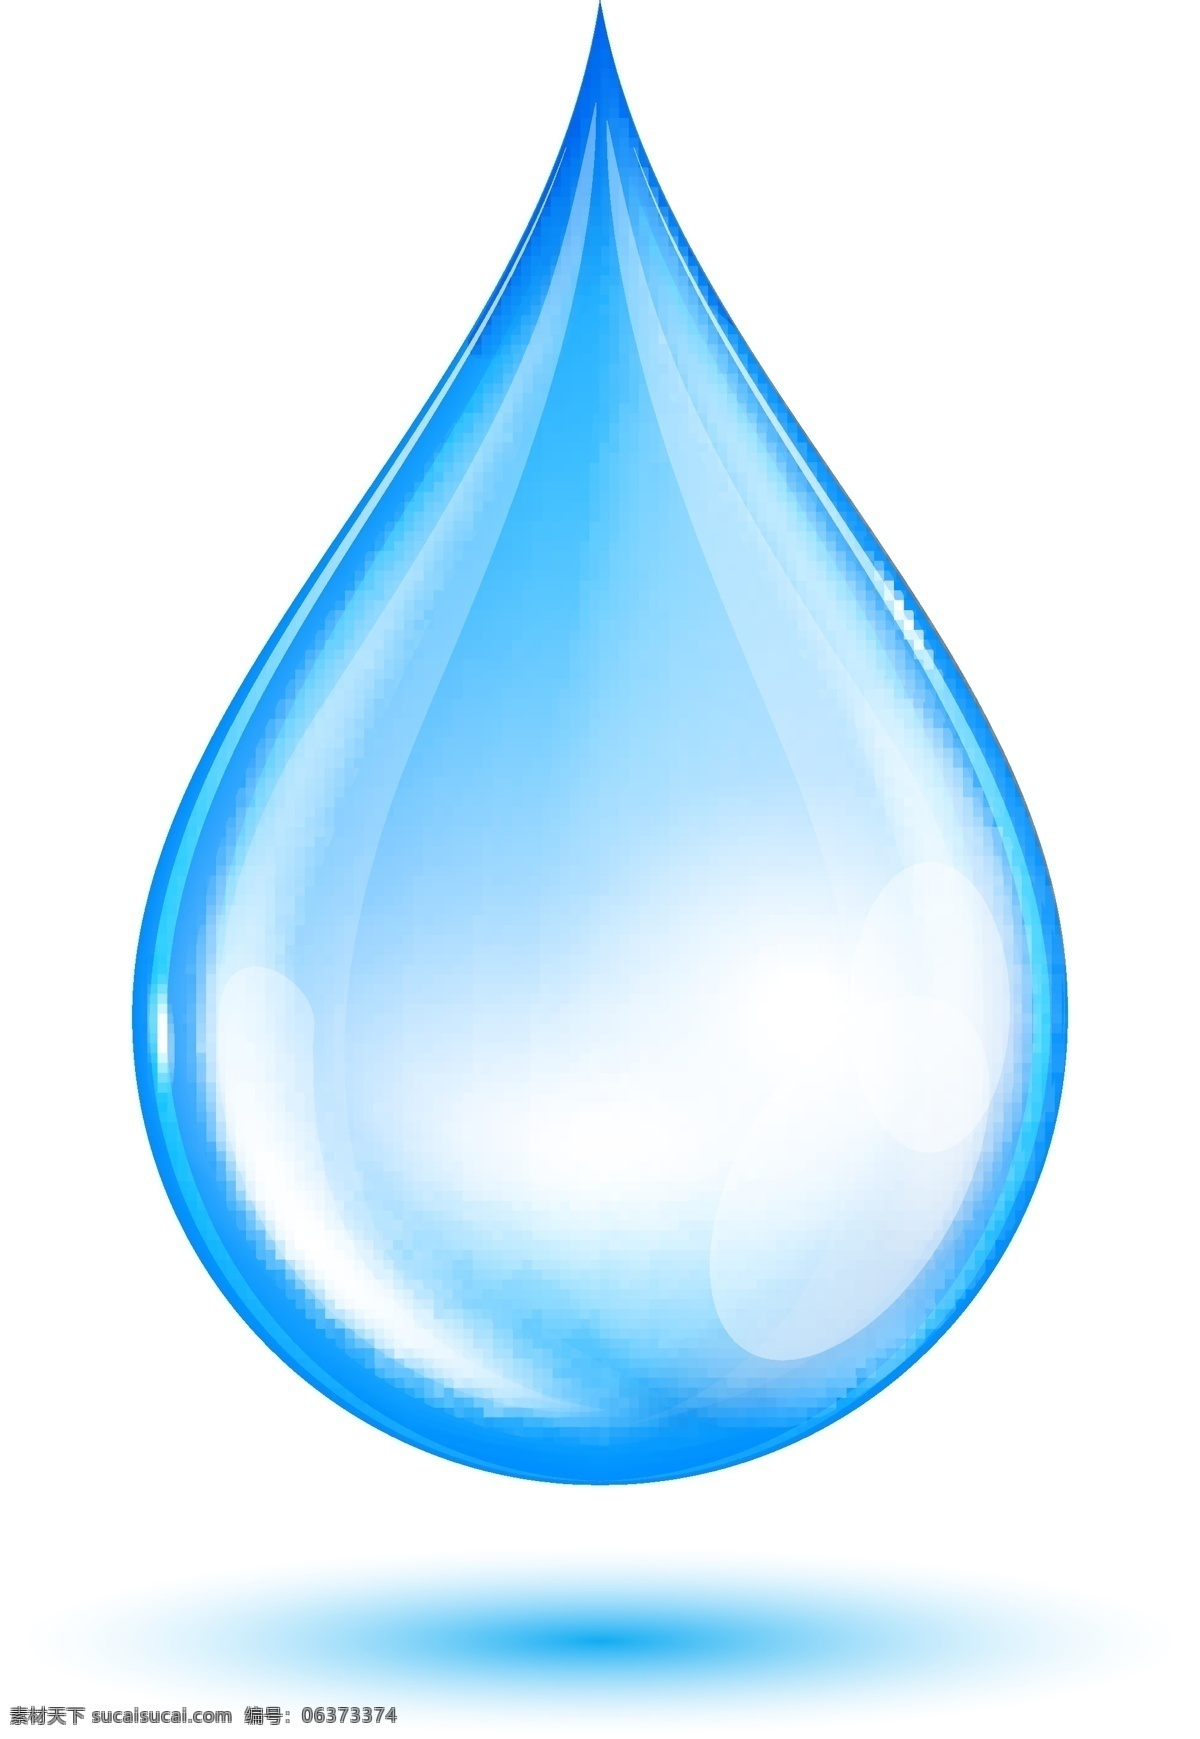 水资源 水图标 水滴 水珠 水 节约用水 淡水 纯净水 饮用水 其他图标 标志图标